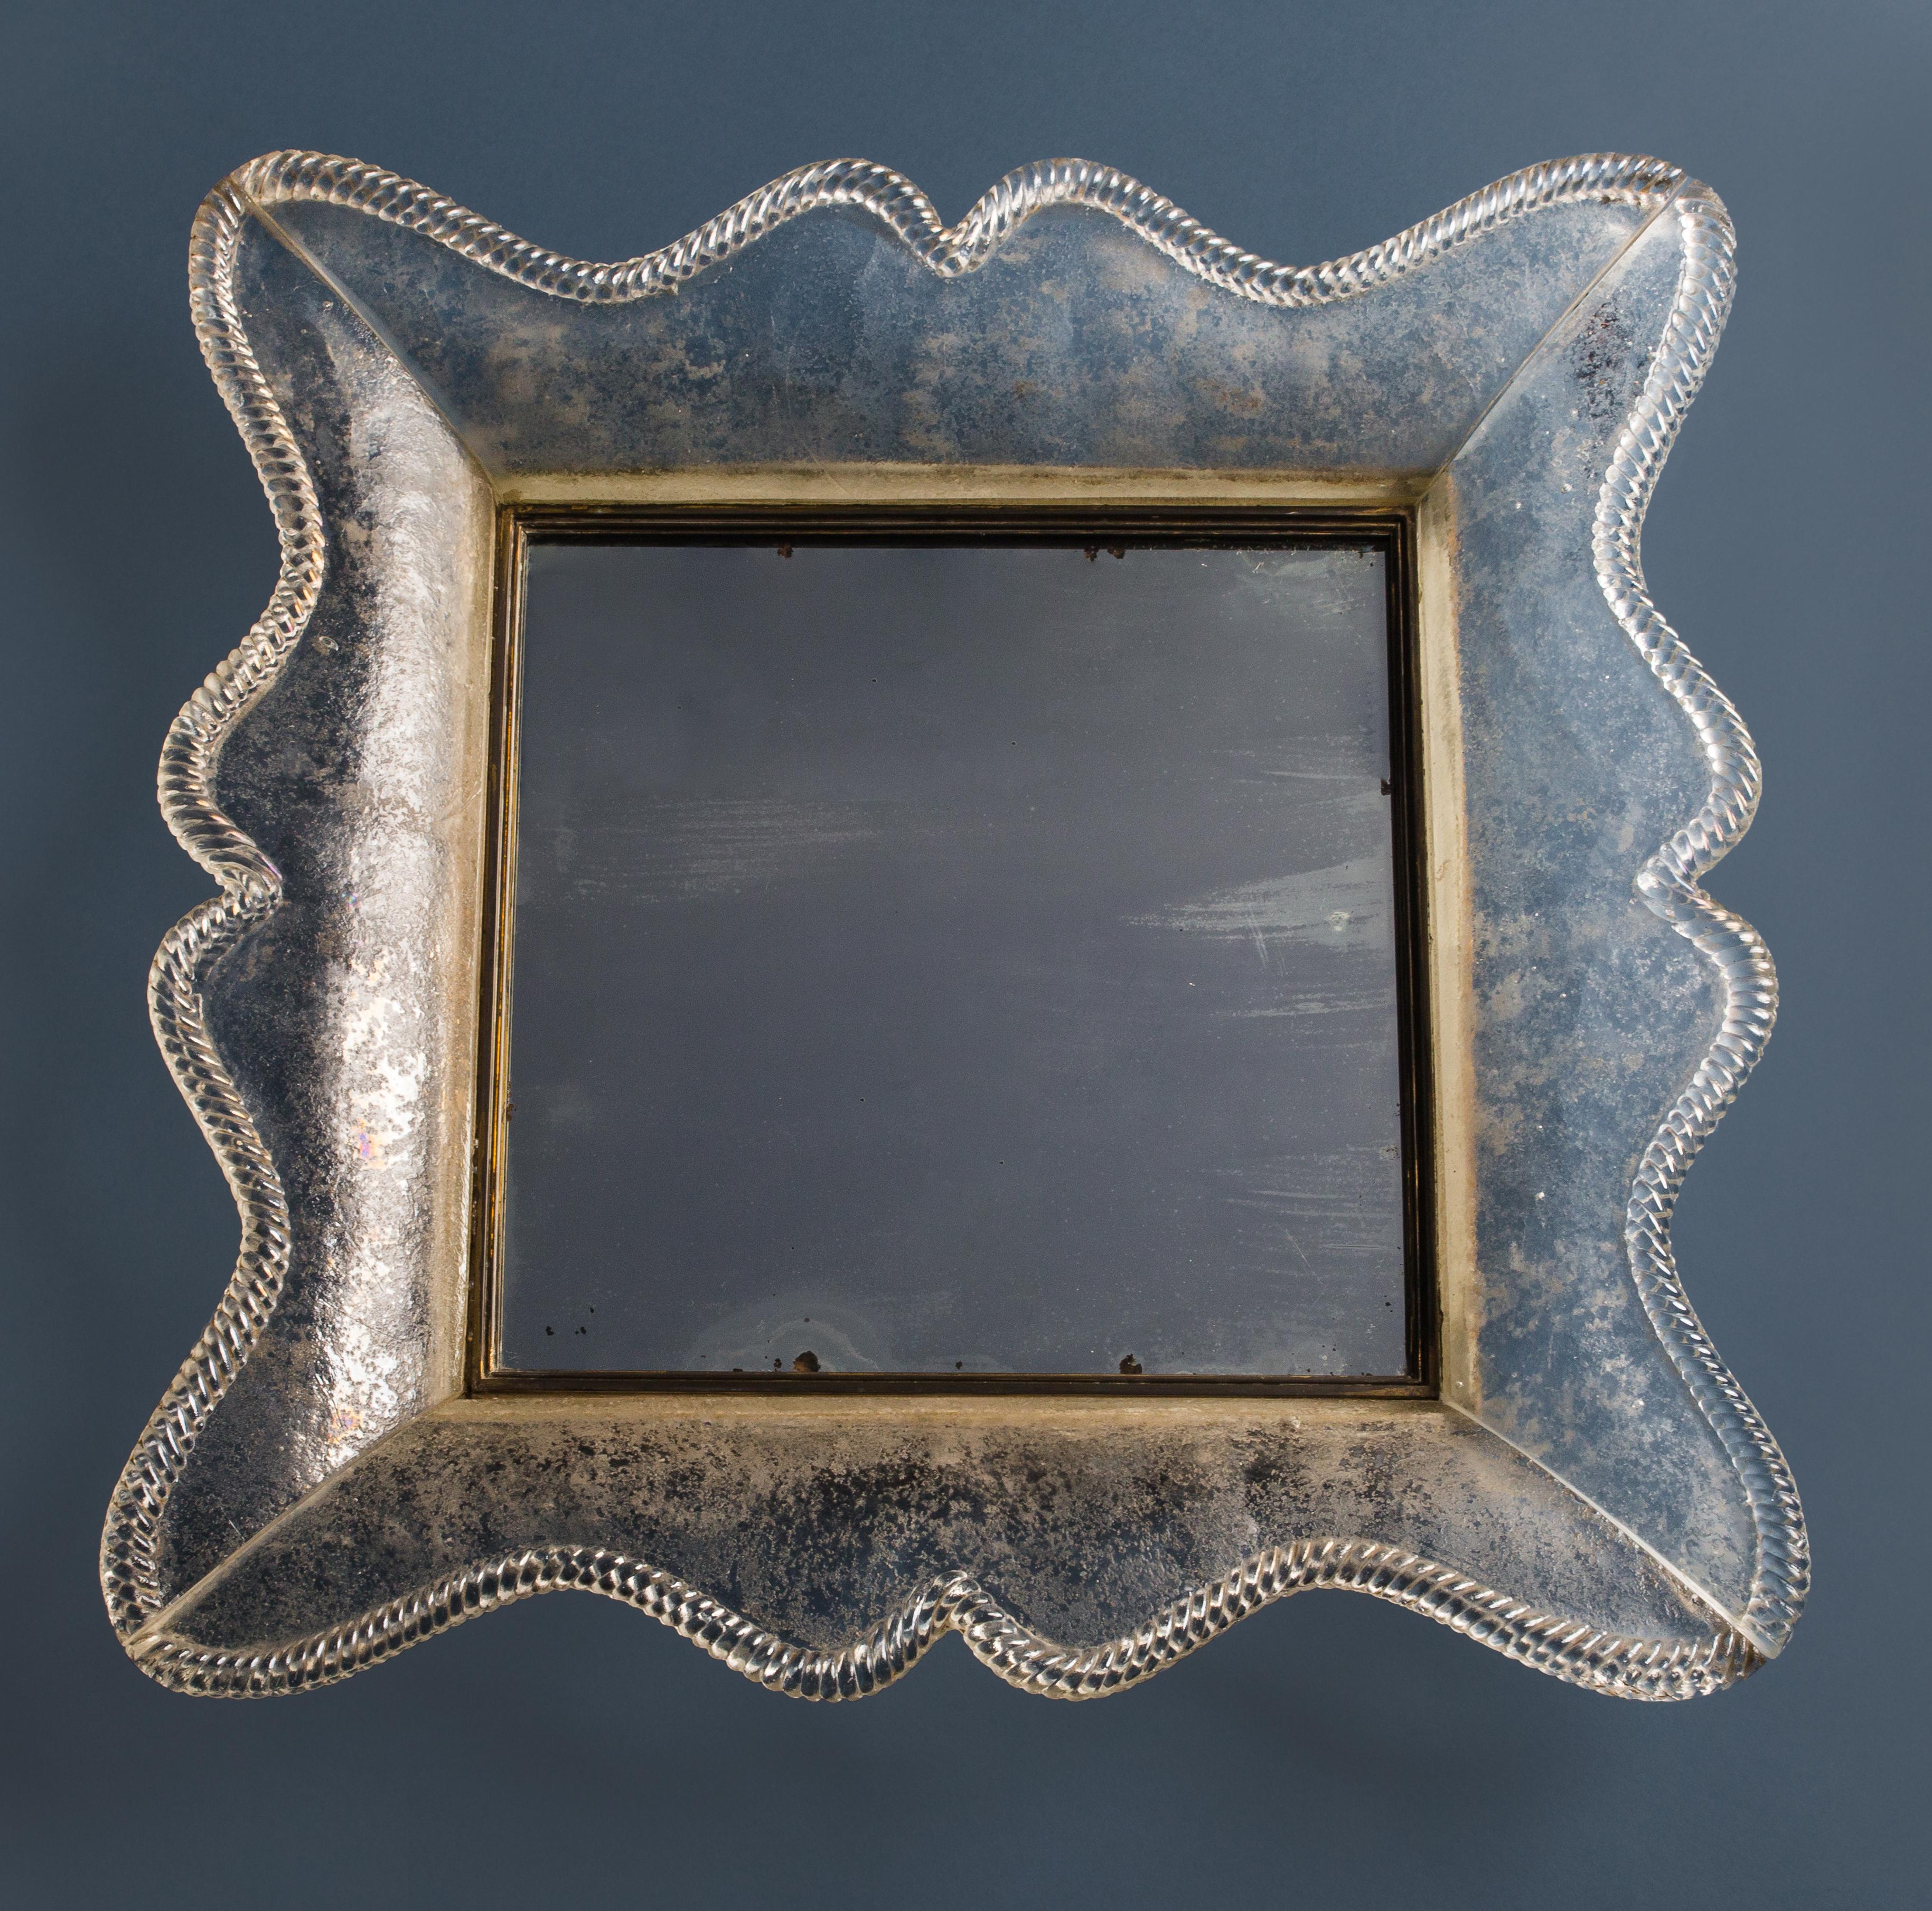 Seguso Vetri d'Arte Rahmen aus dickem Rauchglas (scheinbar blau getönt, tatsächlich aber geräuchertes Klarglas mit dunkelgrauen Schlieren) mit gedrehter Seilumrandung, originales Spiegelglas mit Messing montiert, Italien, um 1940. Dieser klassische